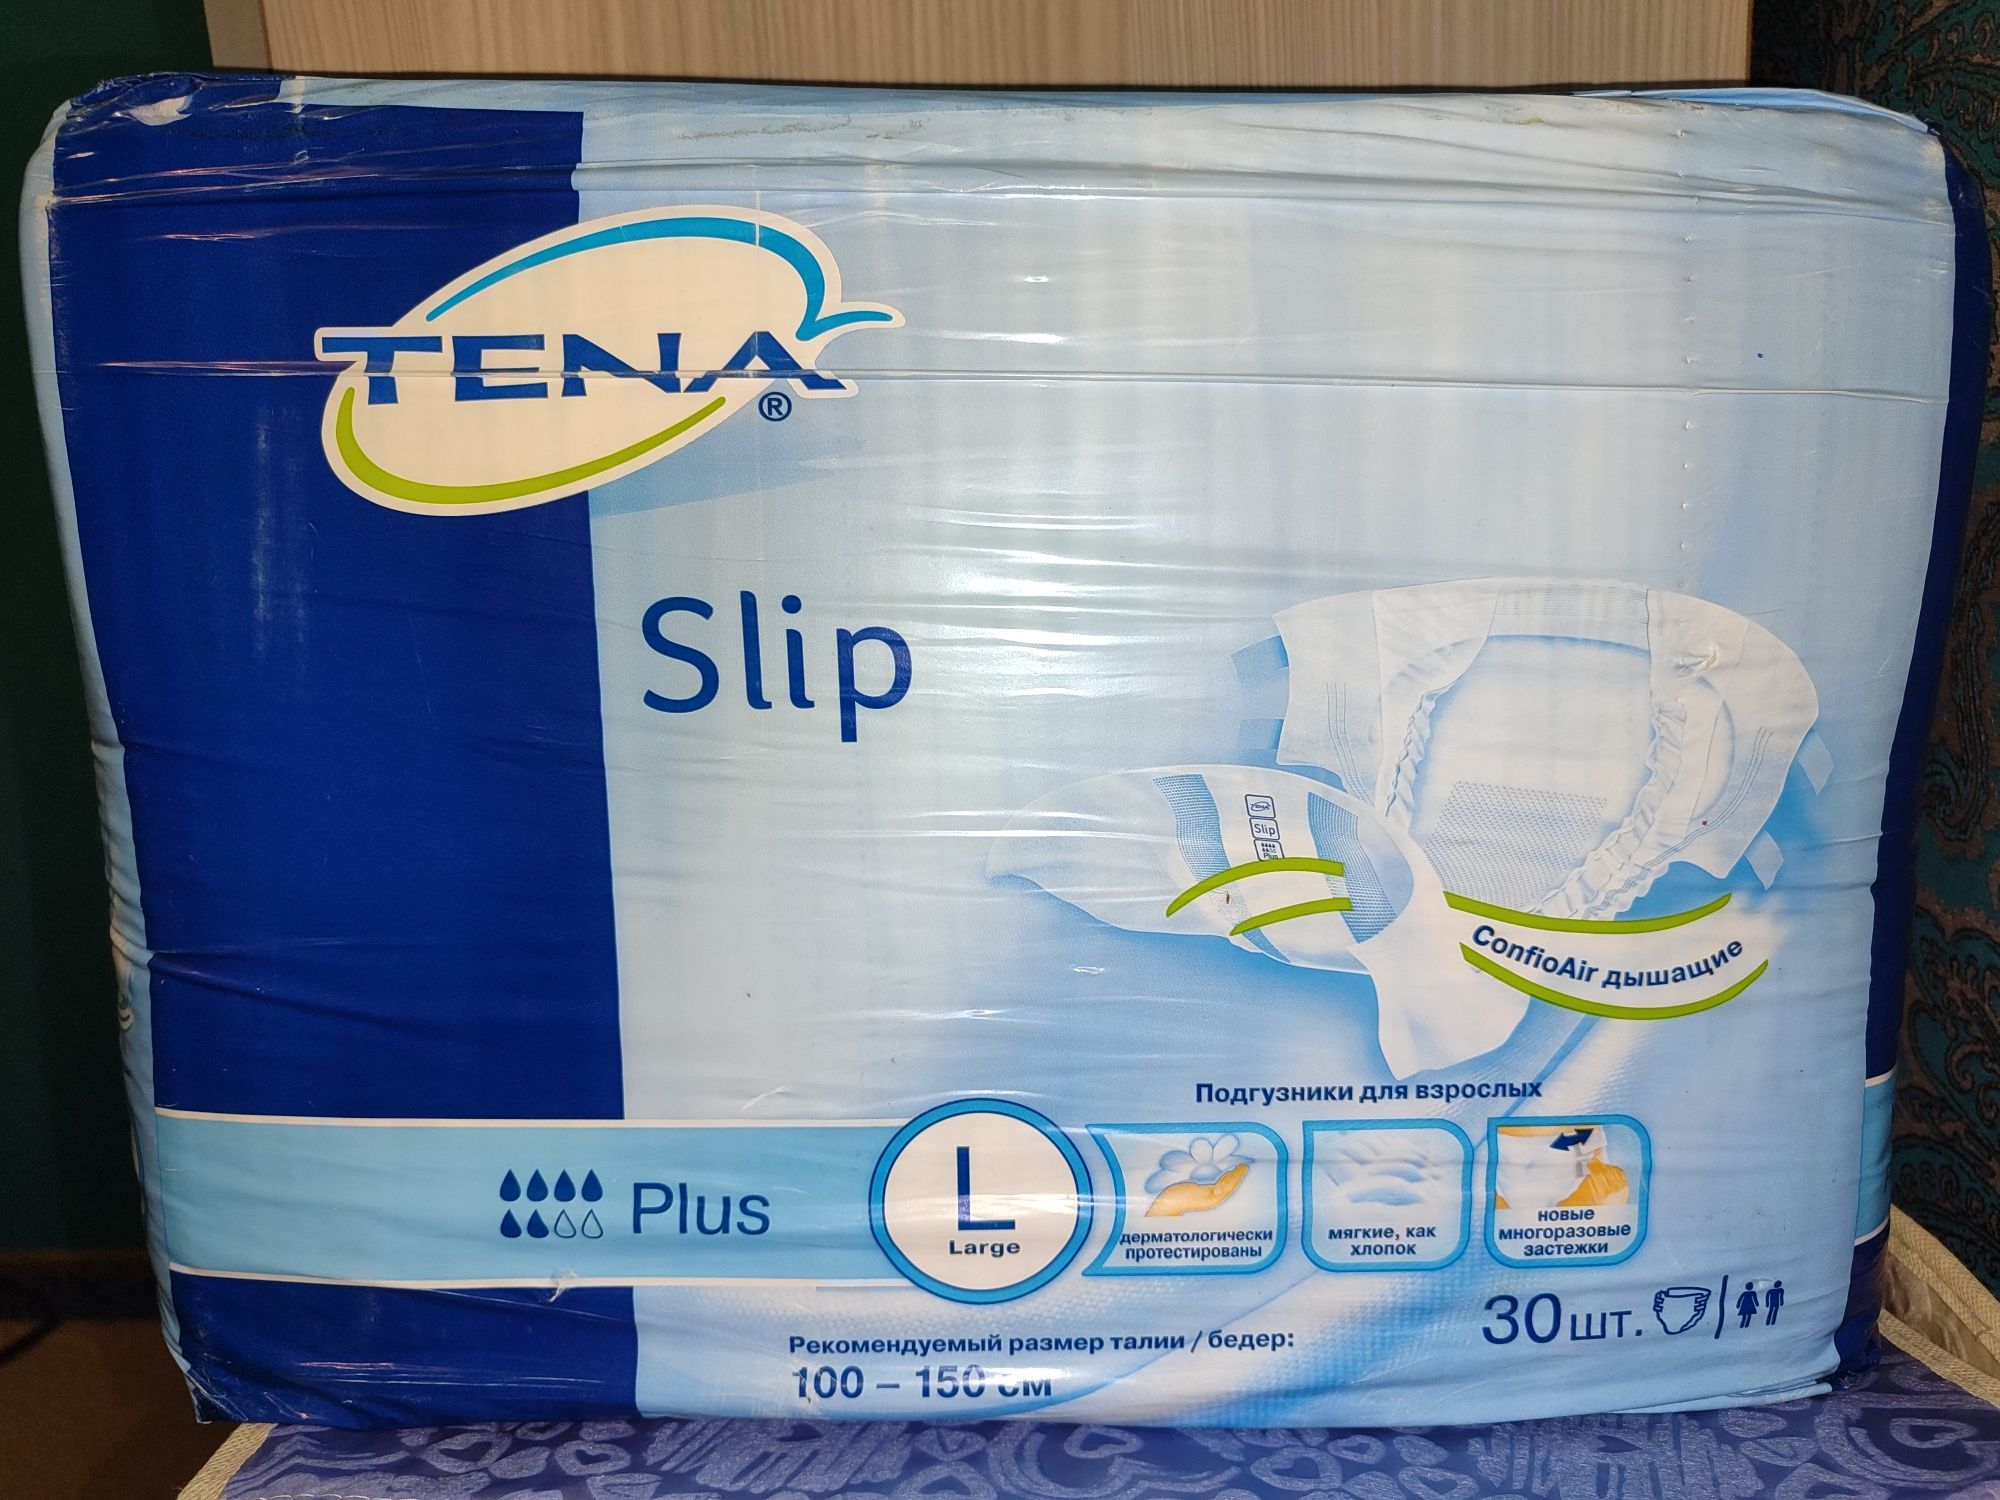 Подгузники для  взрослых 1 упаковка 
TENA Slip Plus Large 30 шт
Дневны